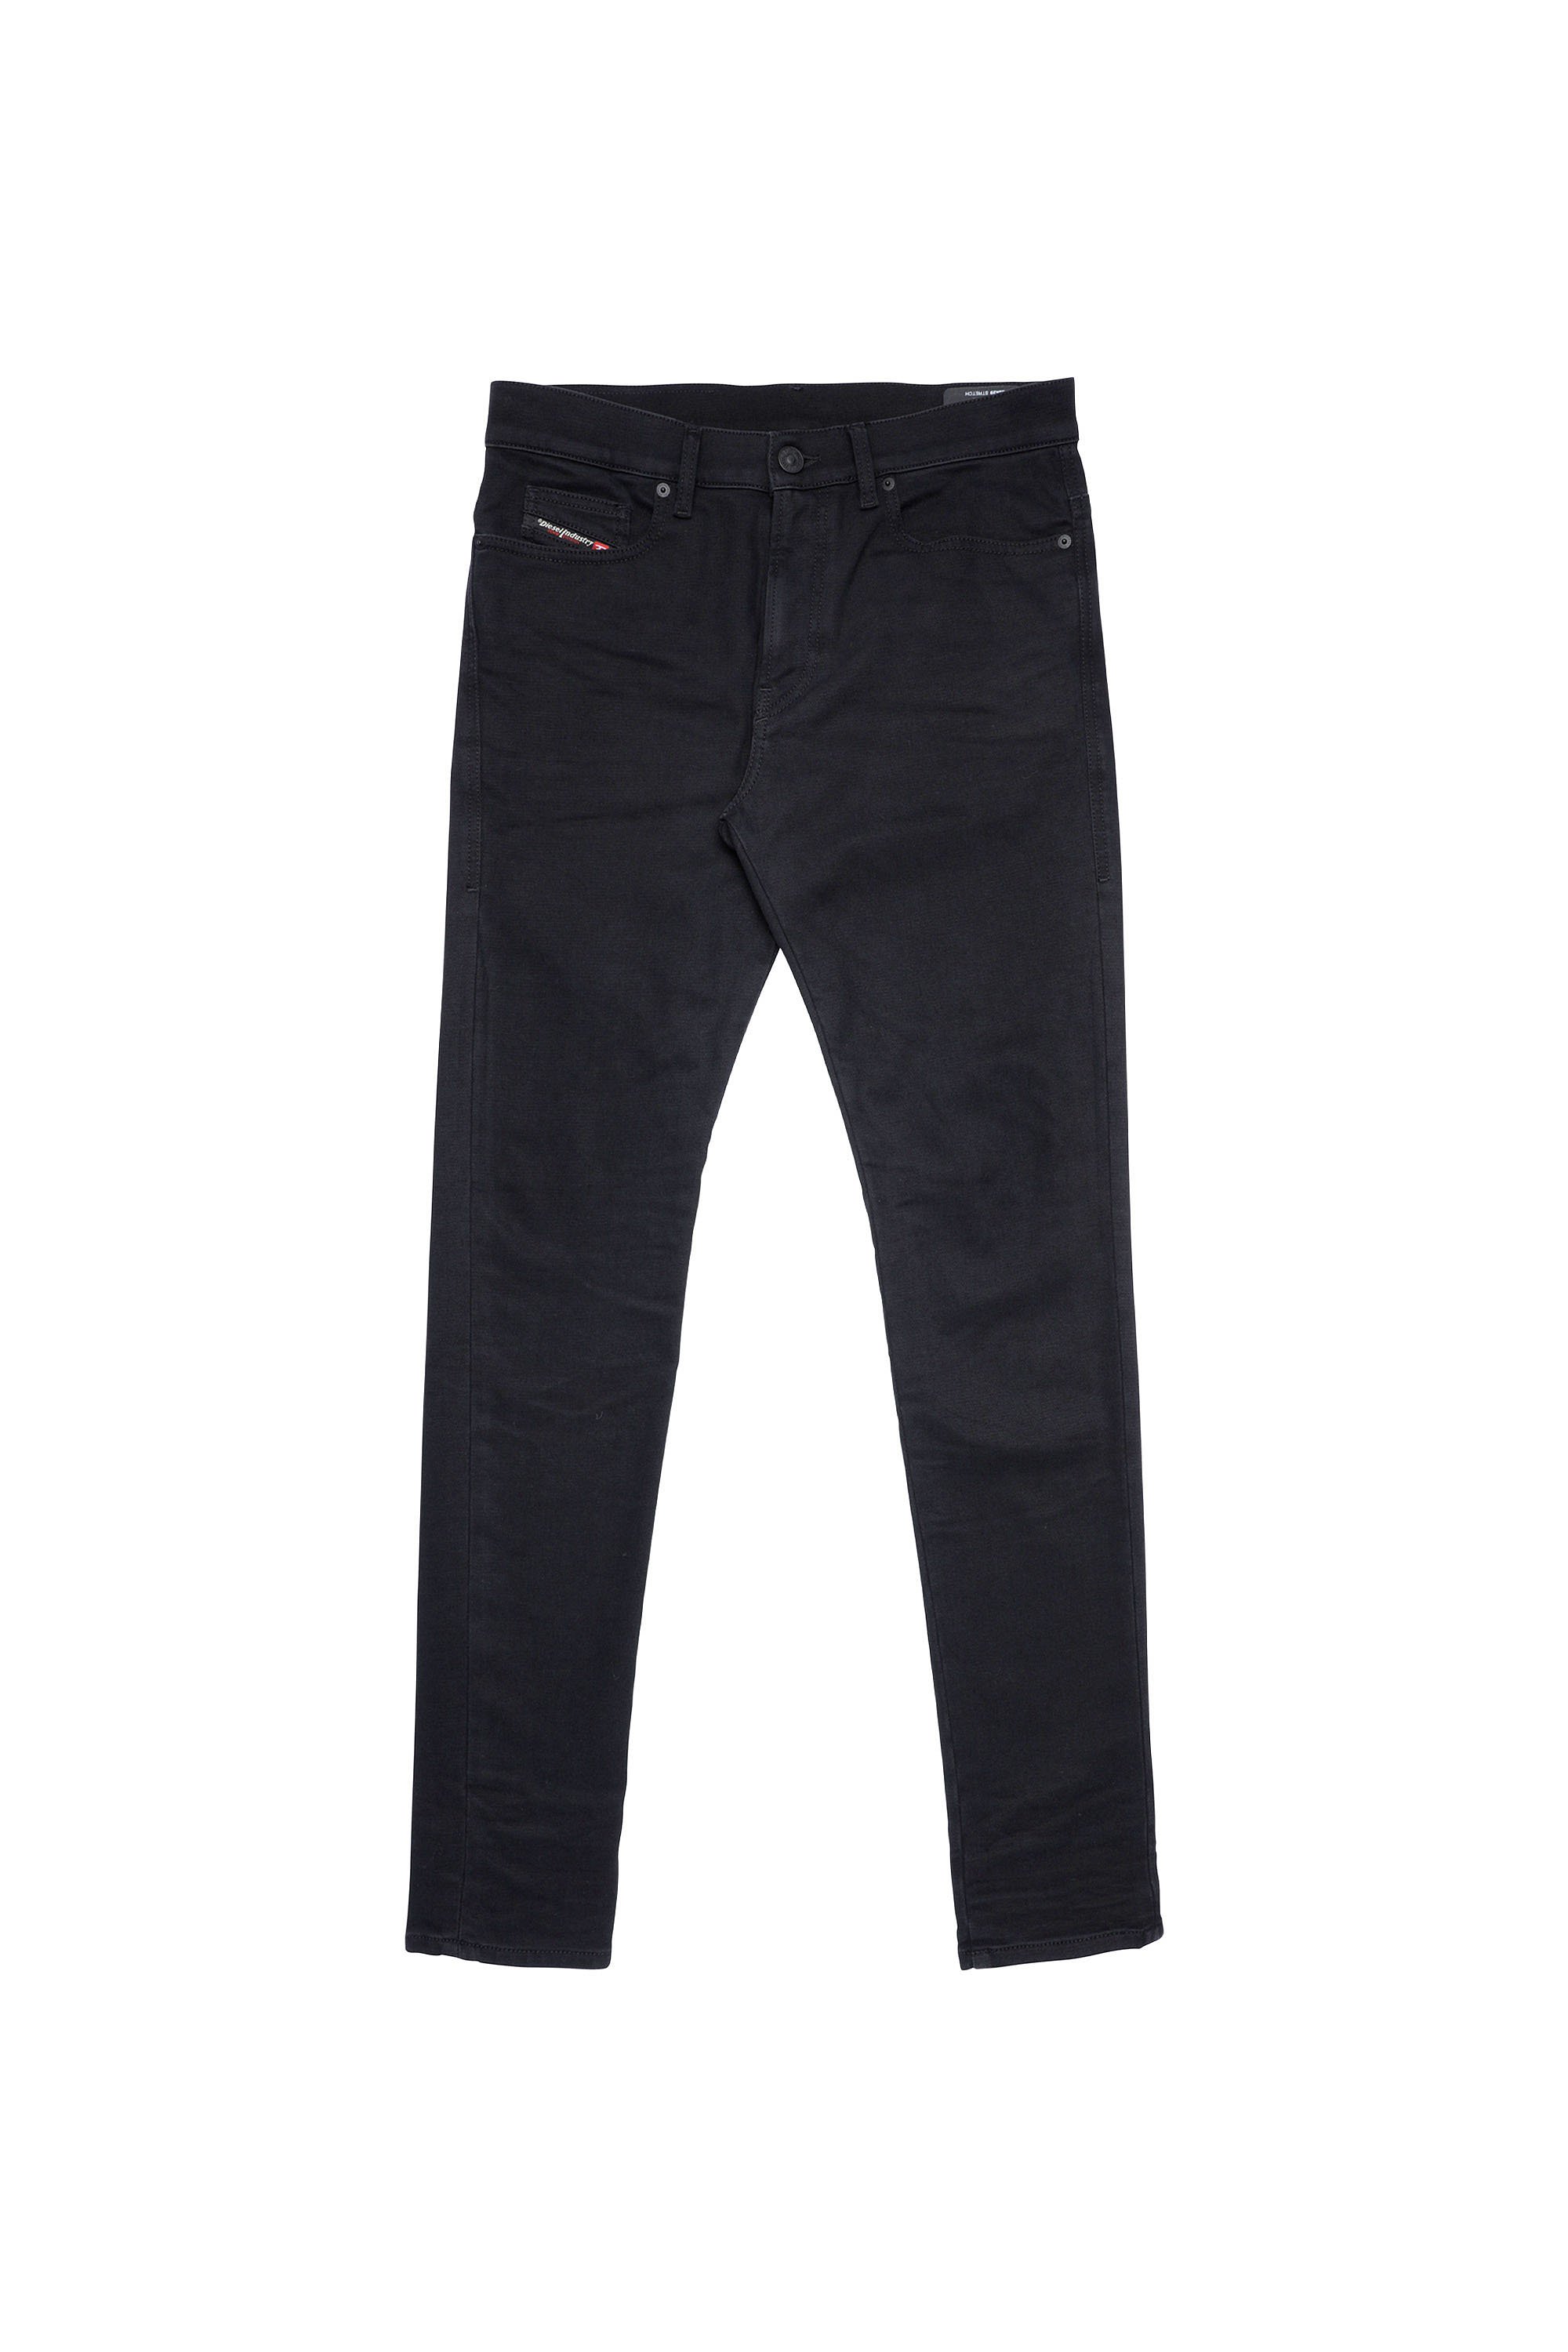 Diesel - D-Amny JoggJeans® Z9A29 Skinny, Black/Dark Grey - Image 1